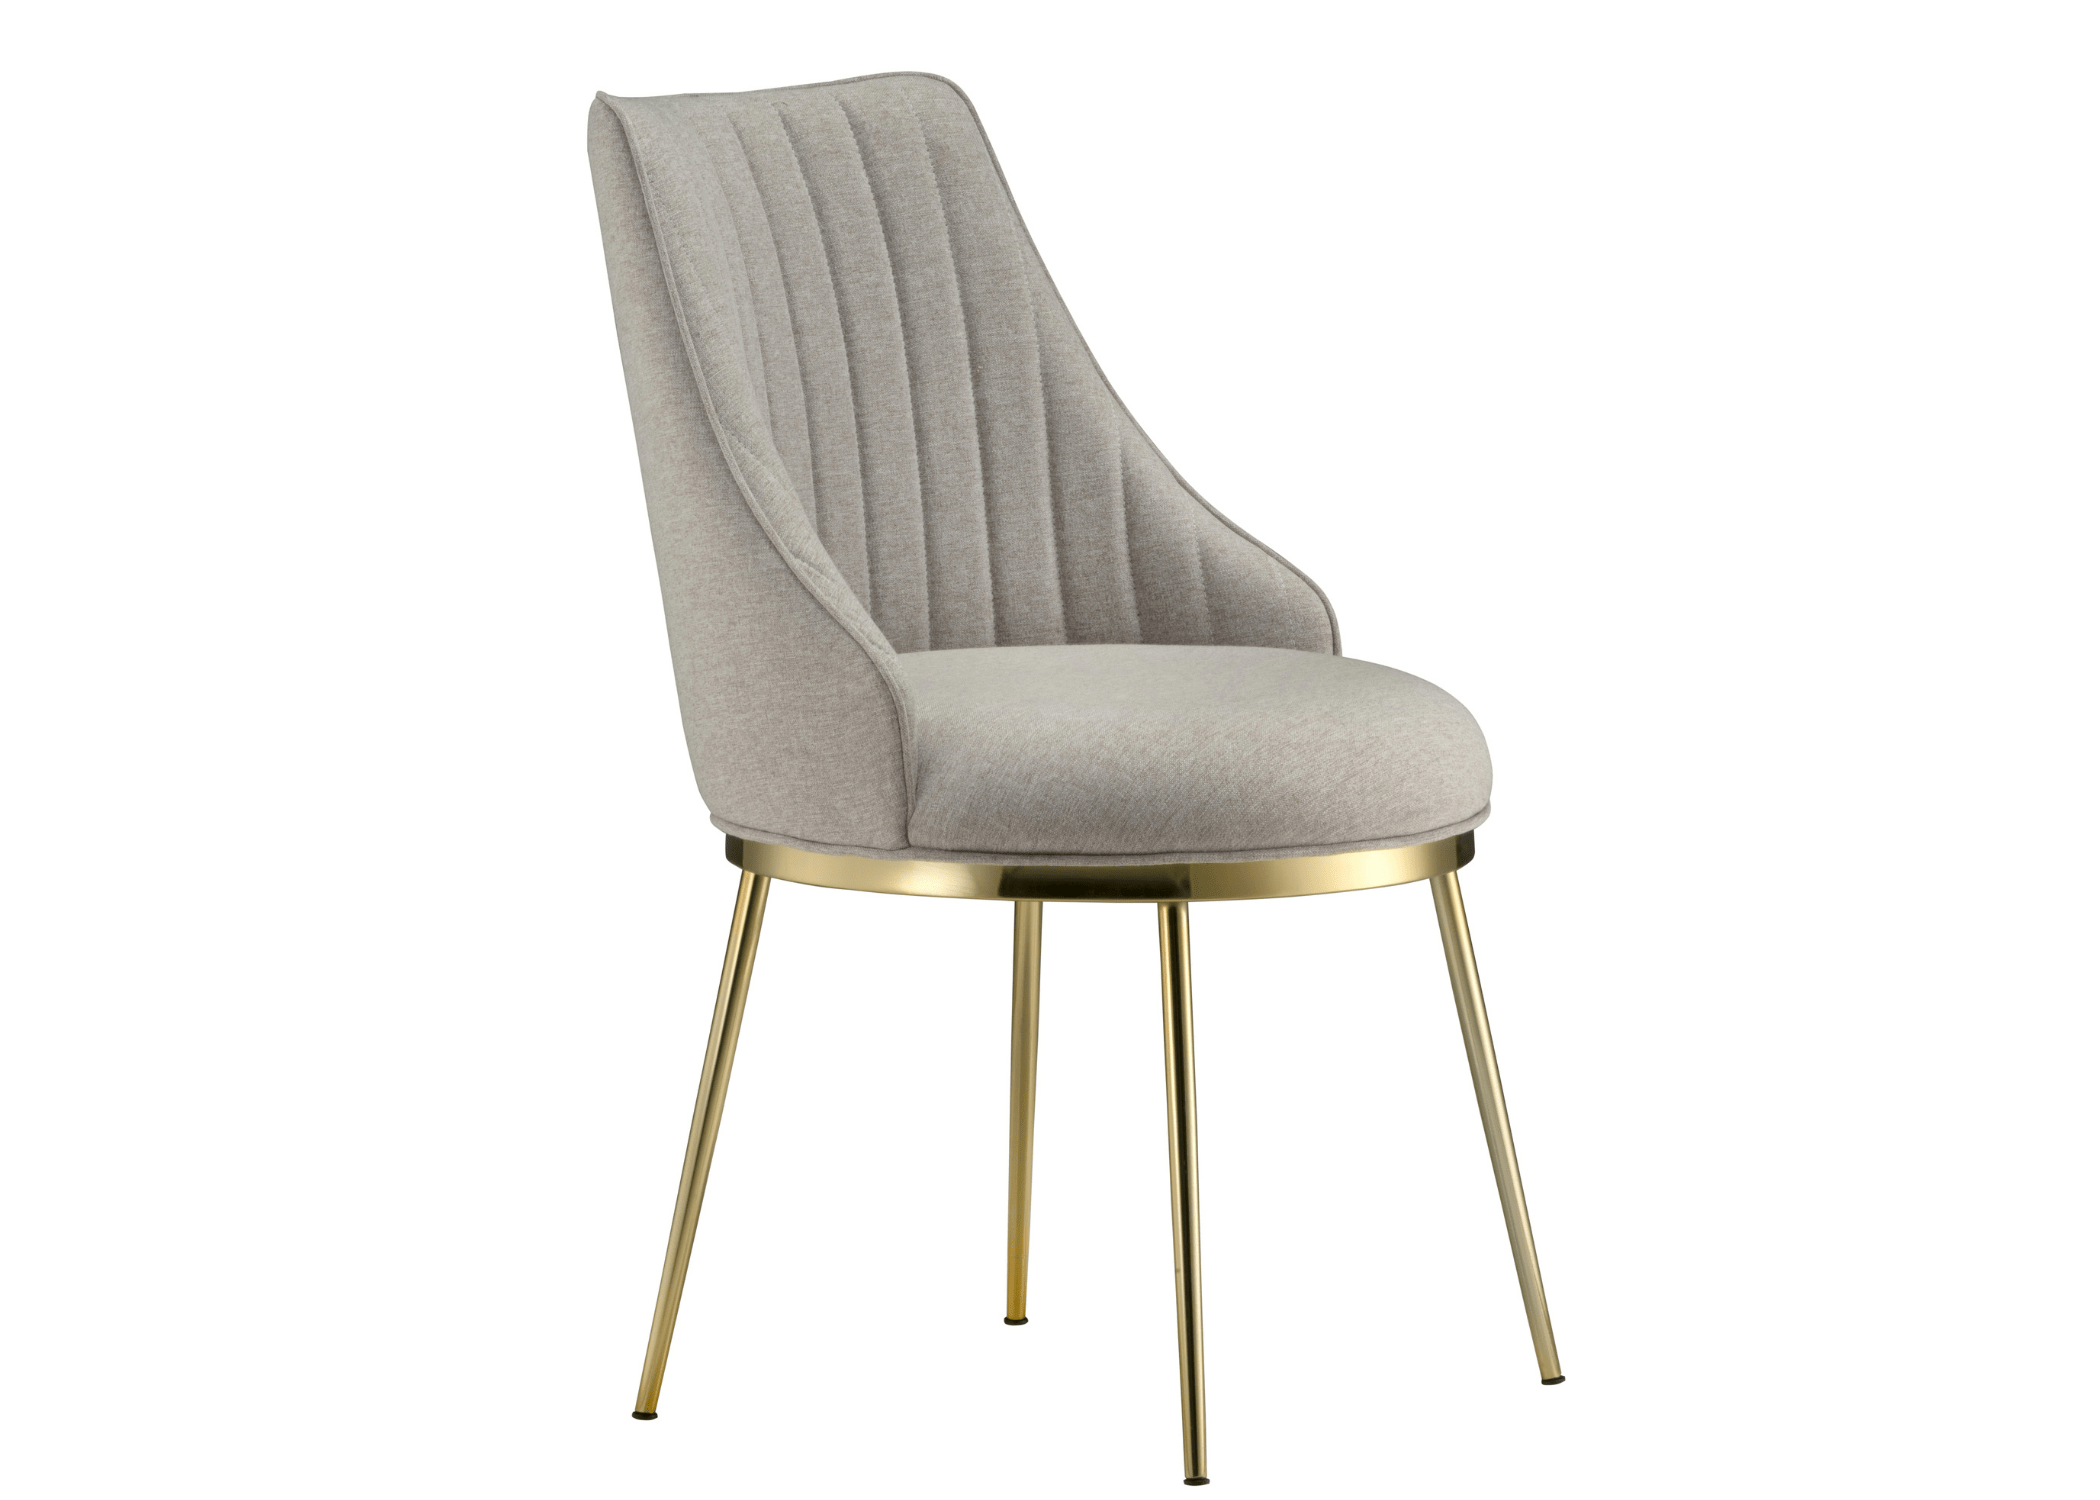 Base em aço carbono com pintura: durabilidade e estilo na Cadeira Merle.